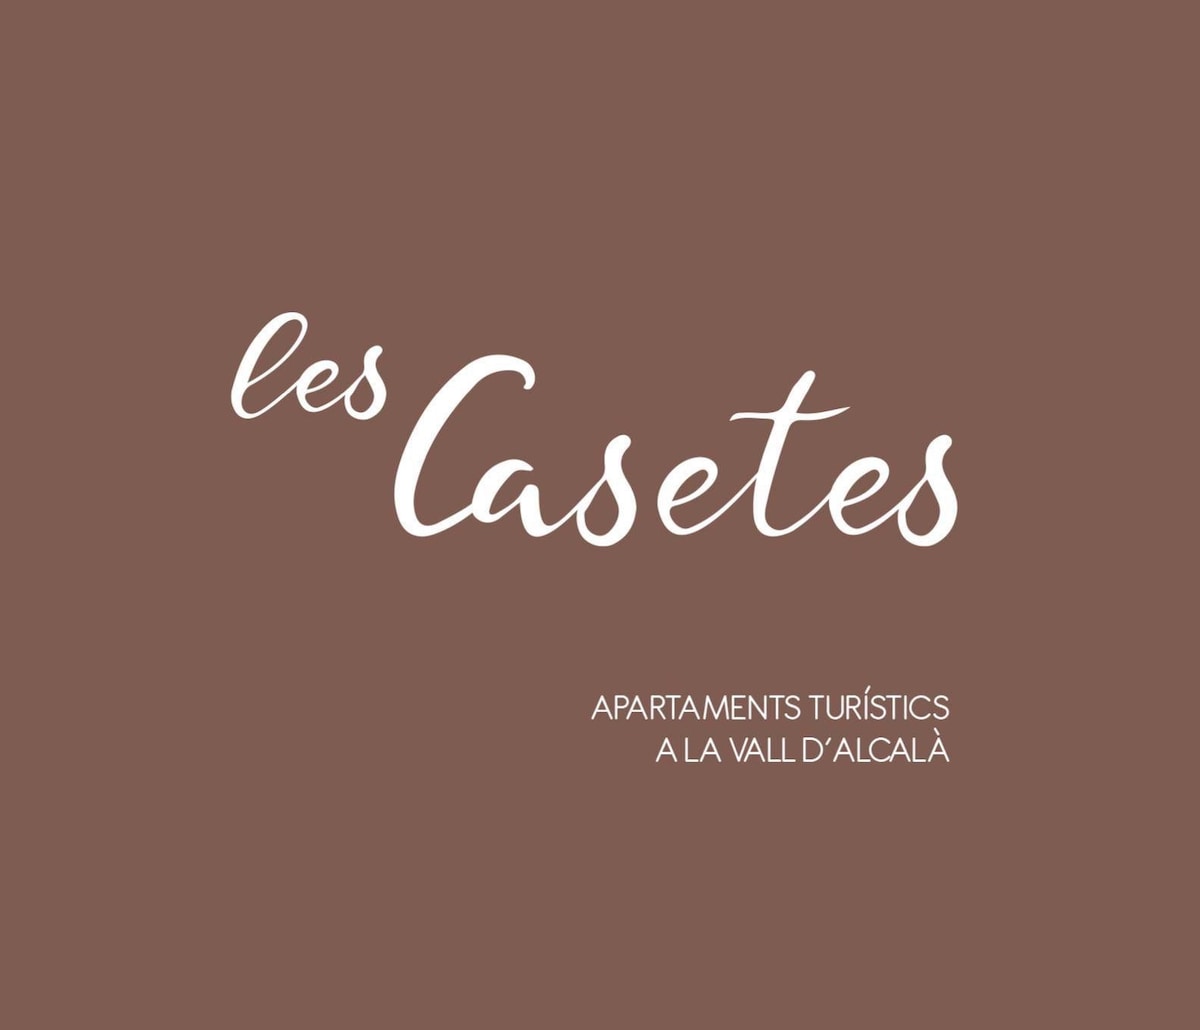 Les Casetes La Vall d 'Alcalà - Ap2